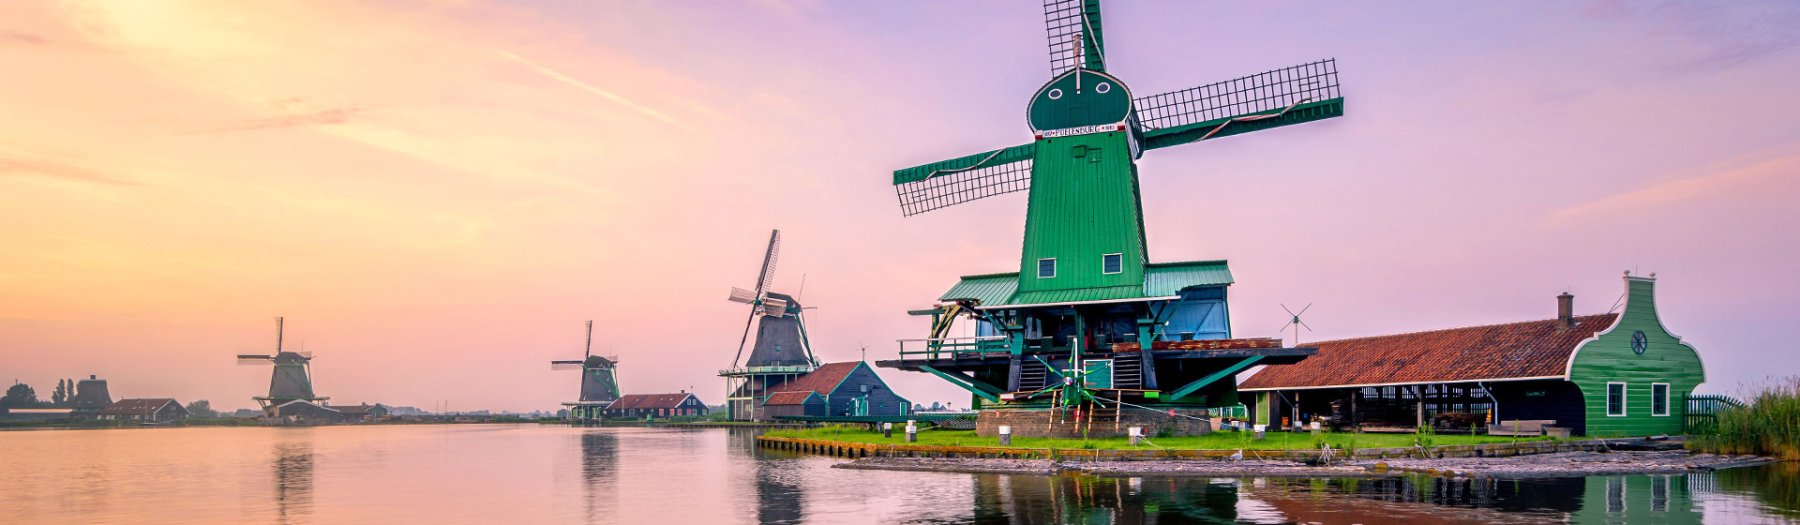 66 schöne Ferienhäuser in Holland warten auf Dich